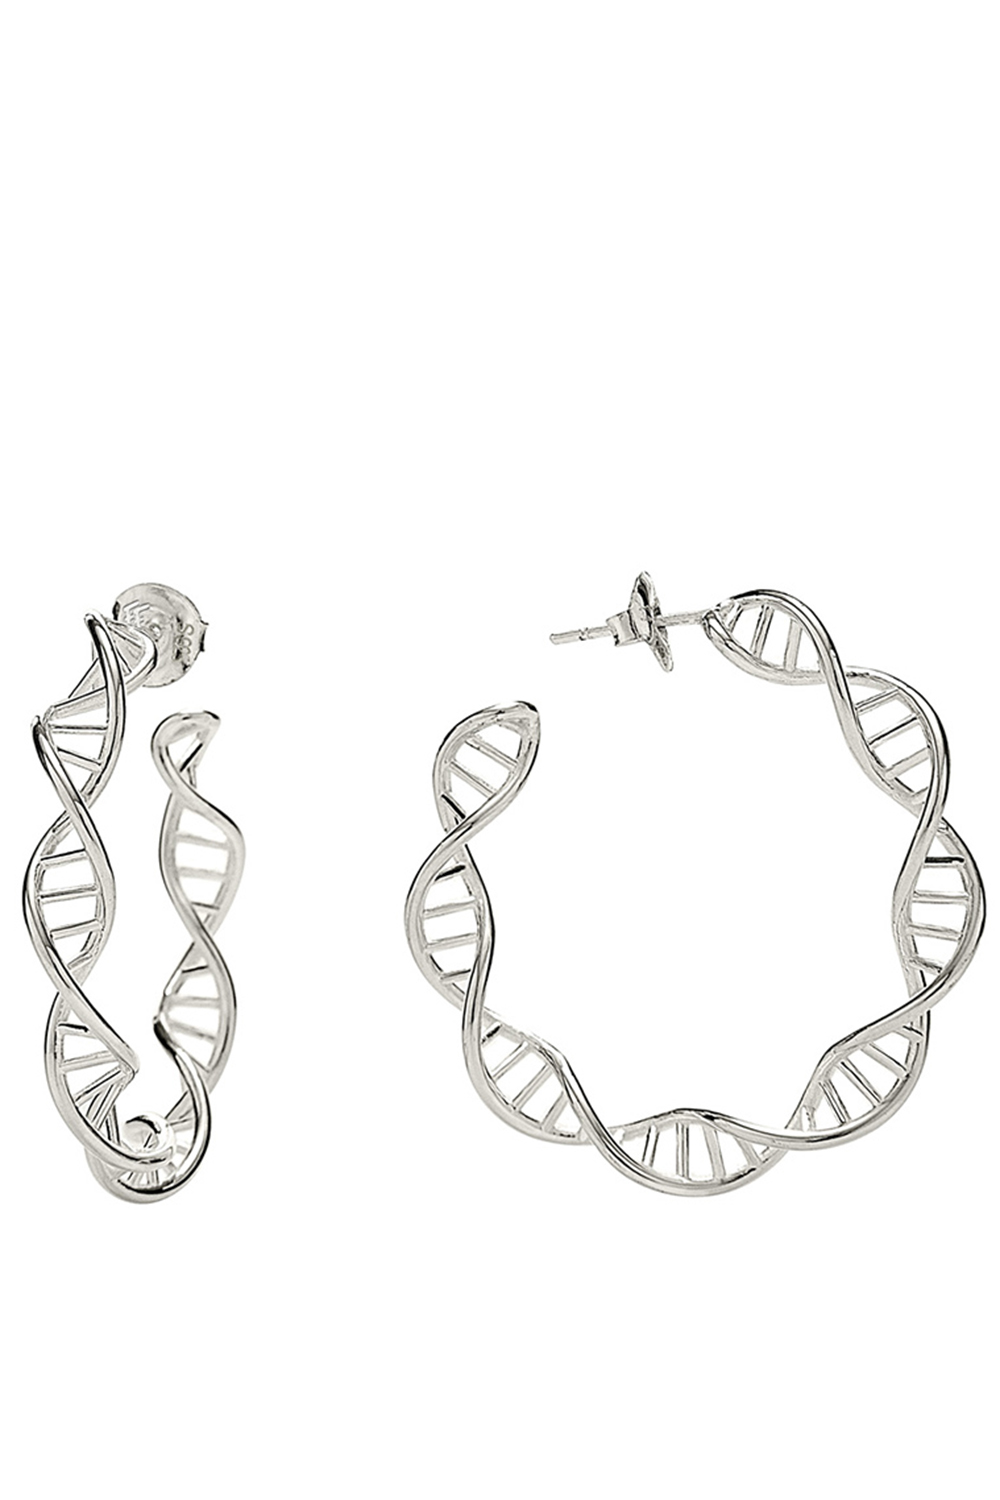 Γυναικεία/Αξεσουάρ/Κοσμήματα/Σκουλαρίκια FOLLI FOLLIE - Γυναικεία ασημένια σκουλαρίκια FOLLI FOLLIE STYLE DNA